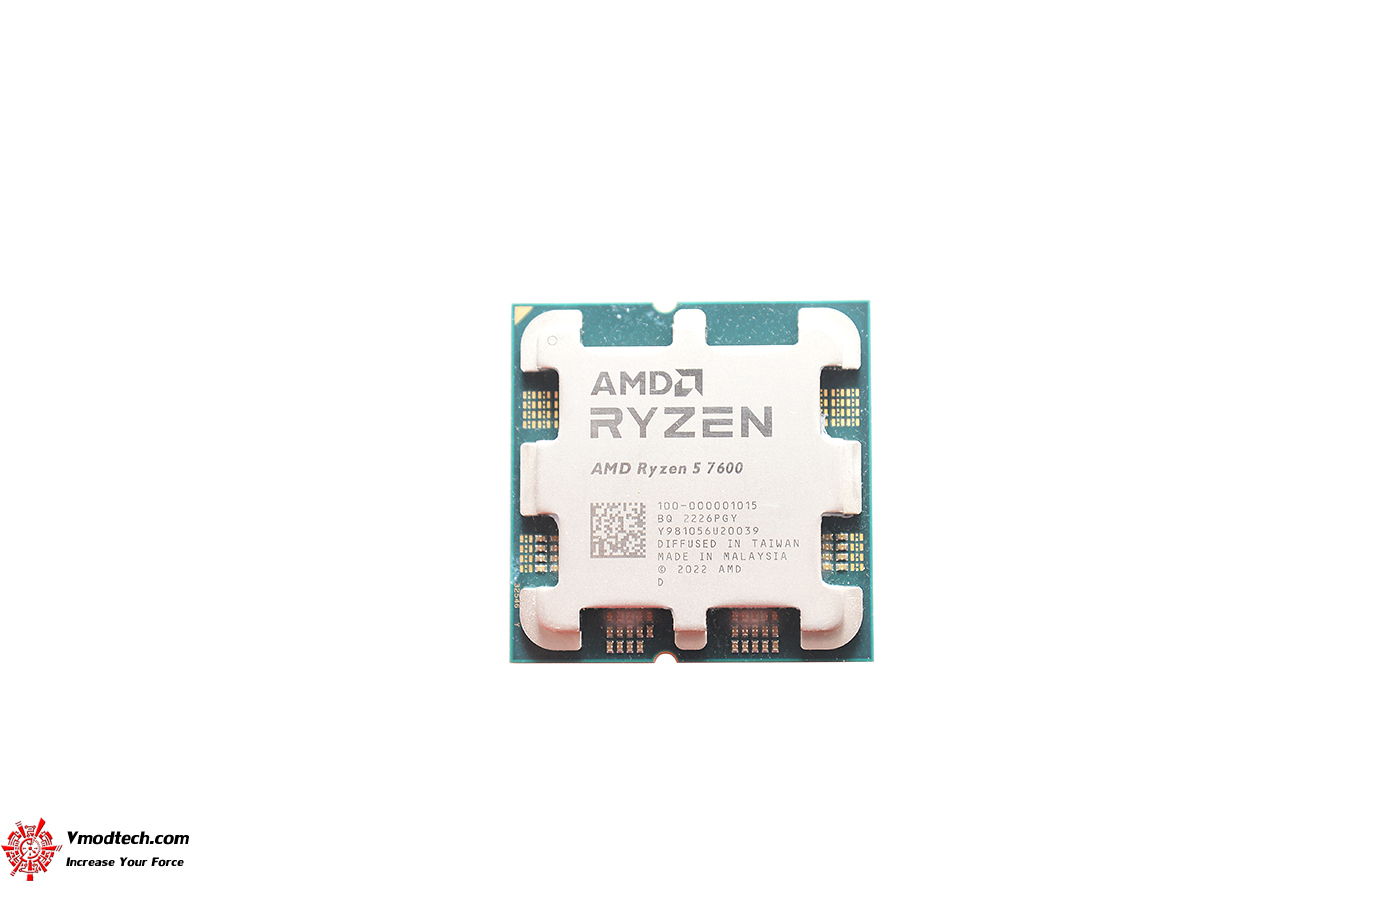 dsc 3749 AMD RYZEN 5 7600 PROCESSOR REVIEW